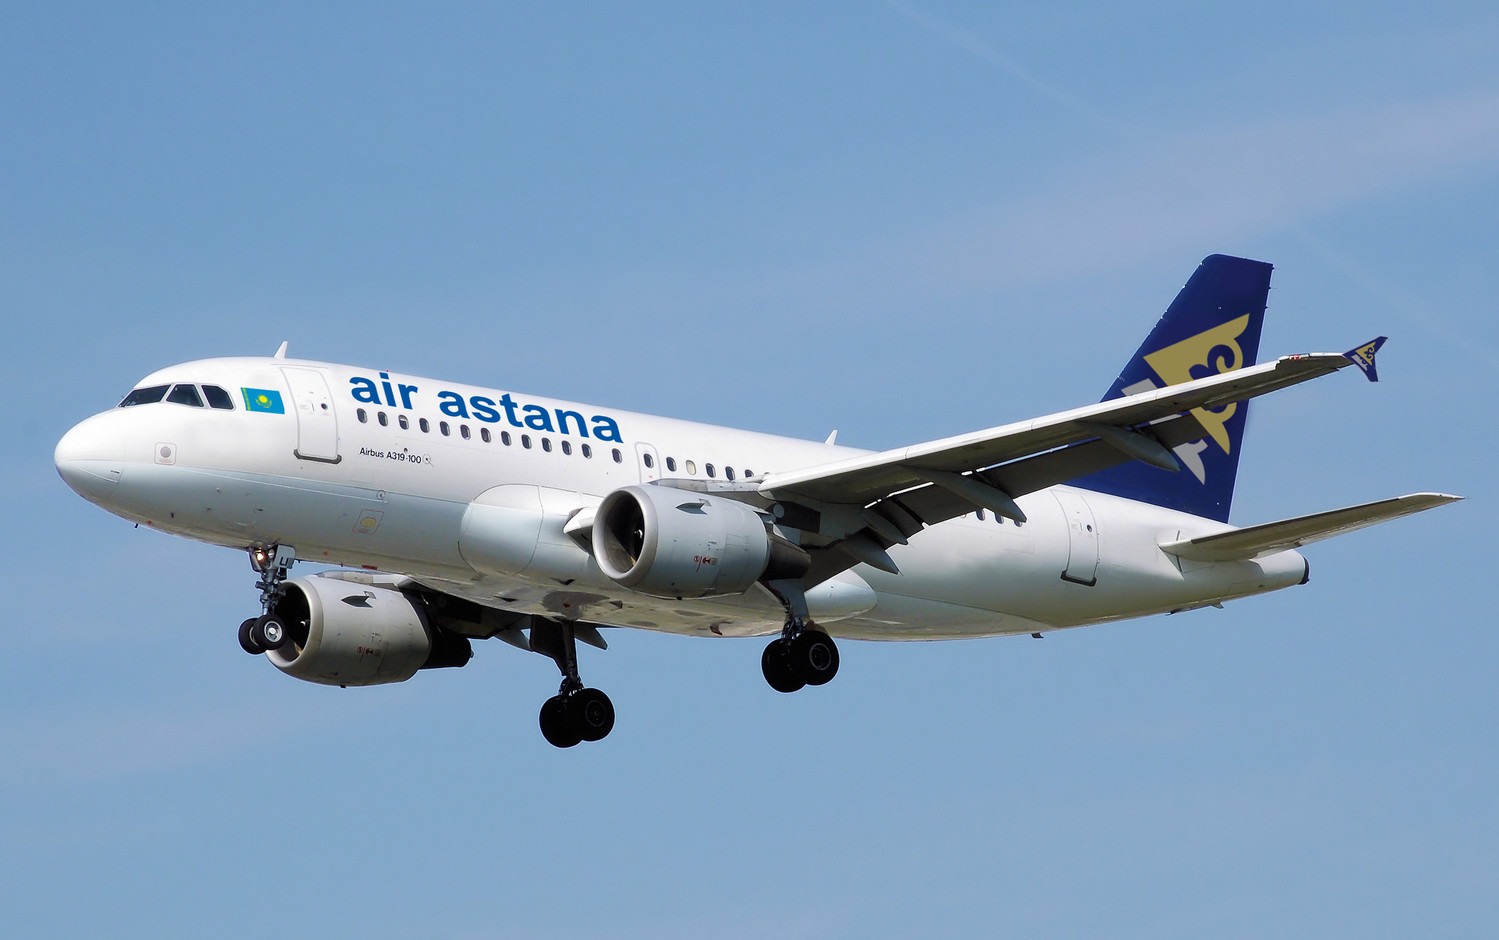 Почти 7 миллиардов тенге штрафа из-за цен на билеты. Что ответила Air Astana